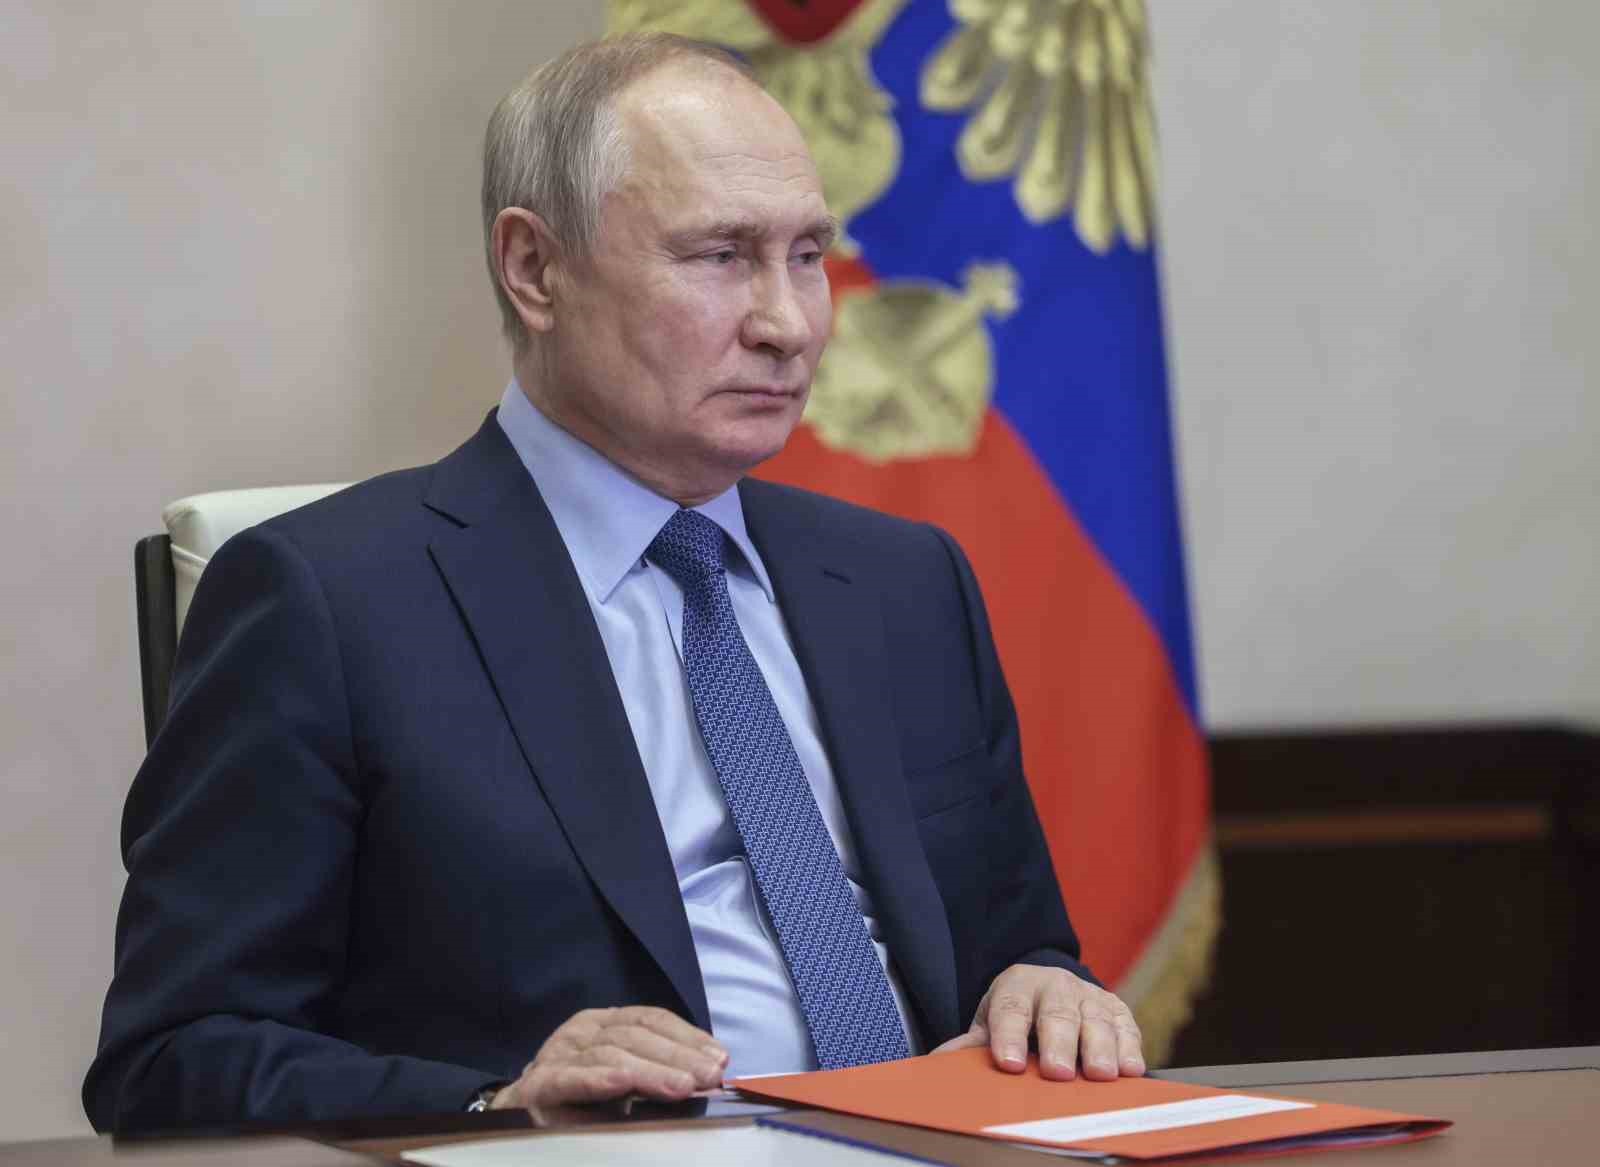 Putin: “Gazprom’un uzun vadeli planları Rusya’nın ulusal çıkarlarını karşılıyor”